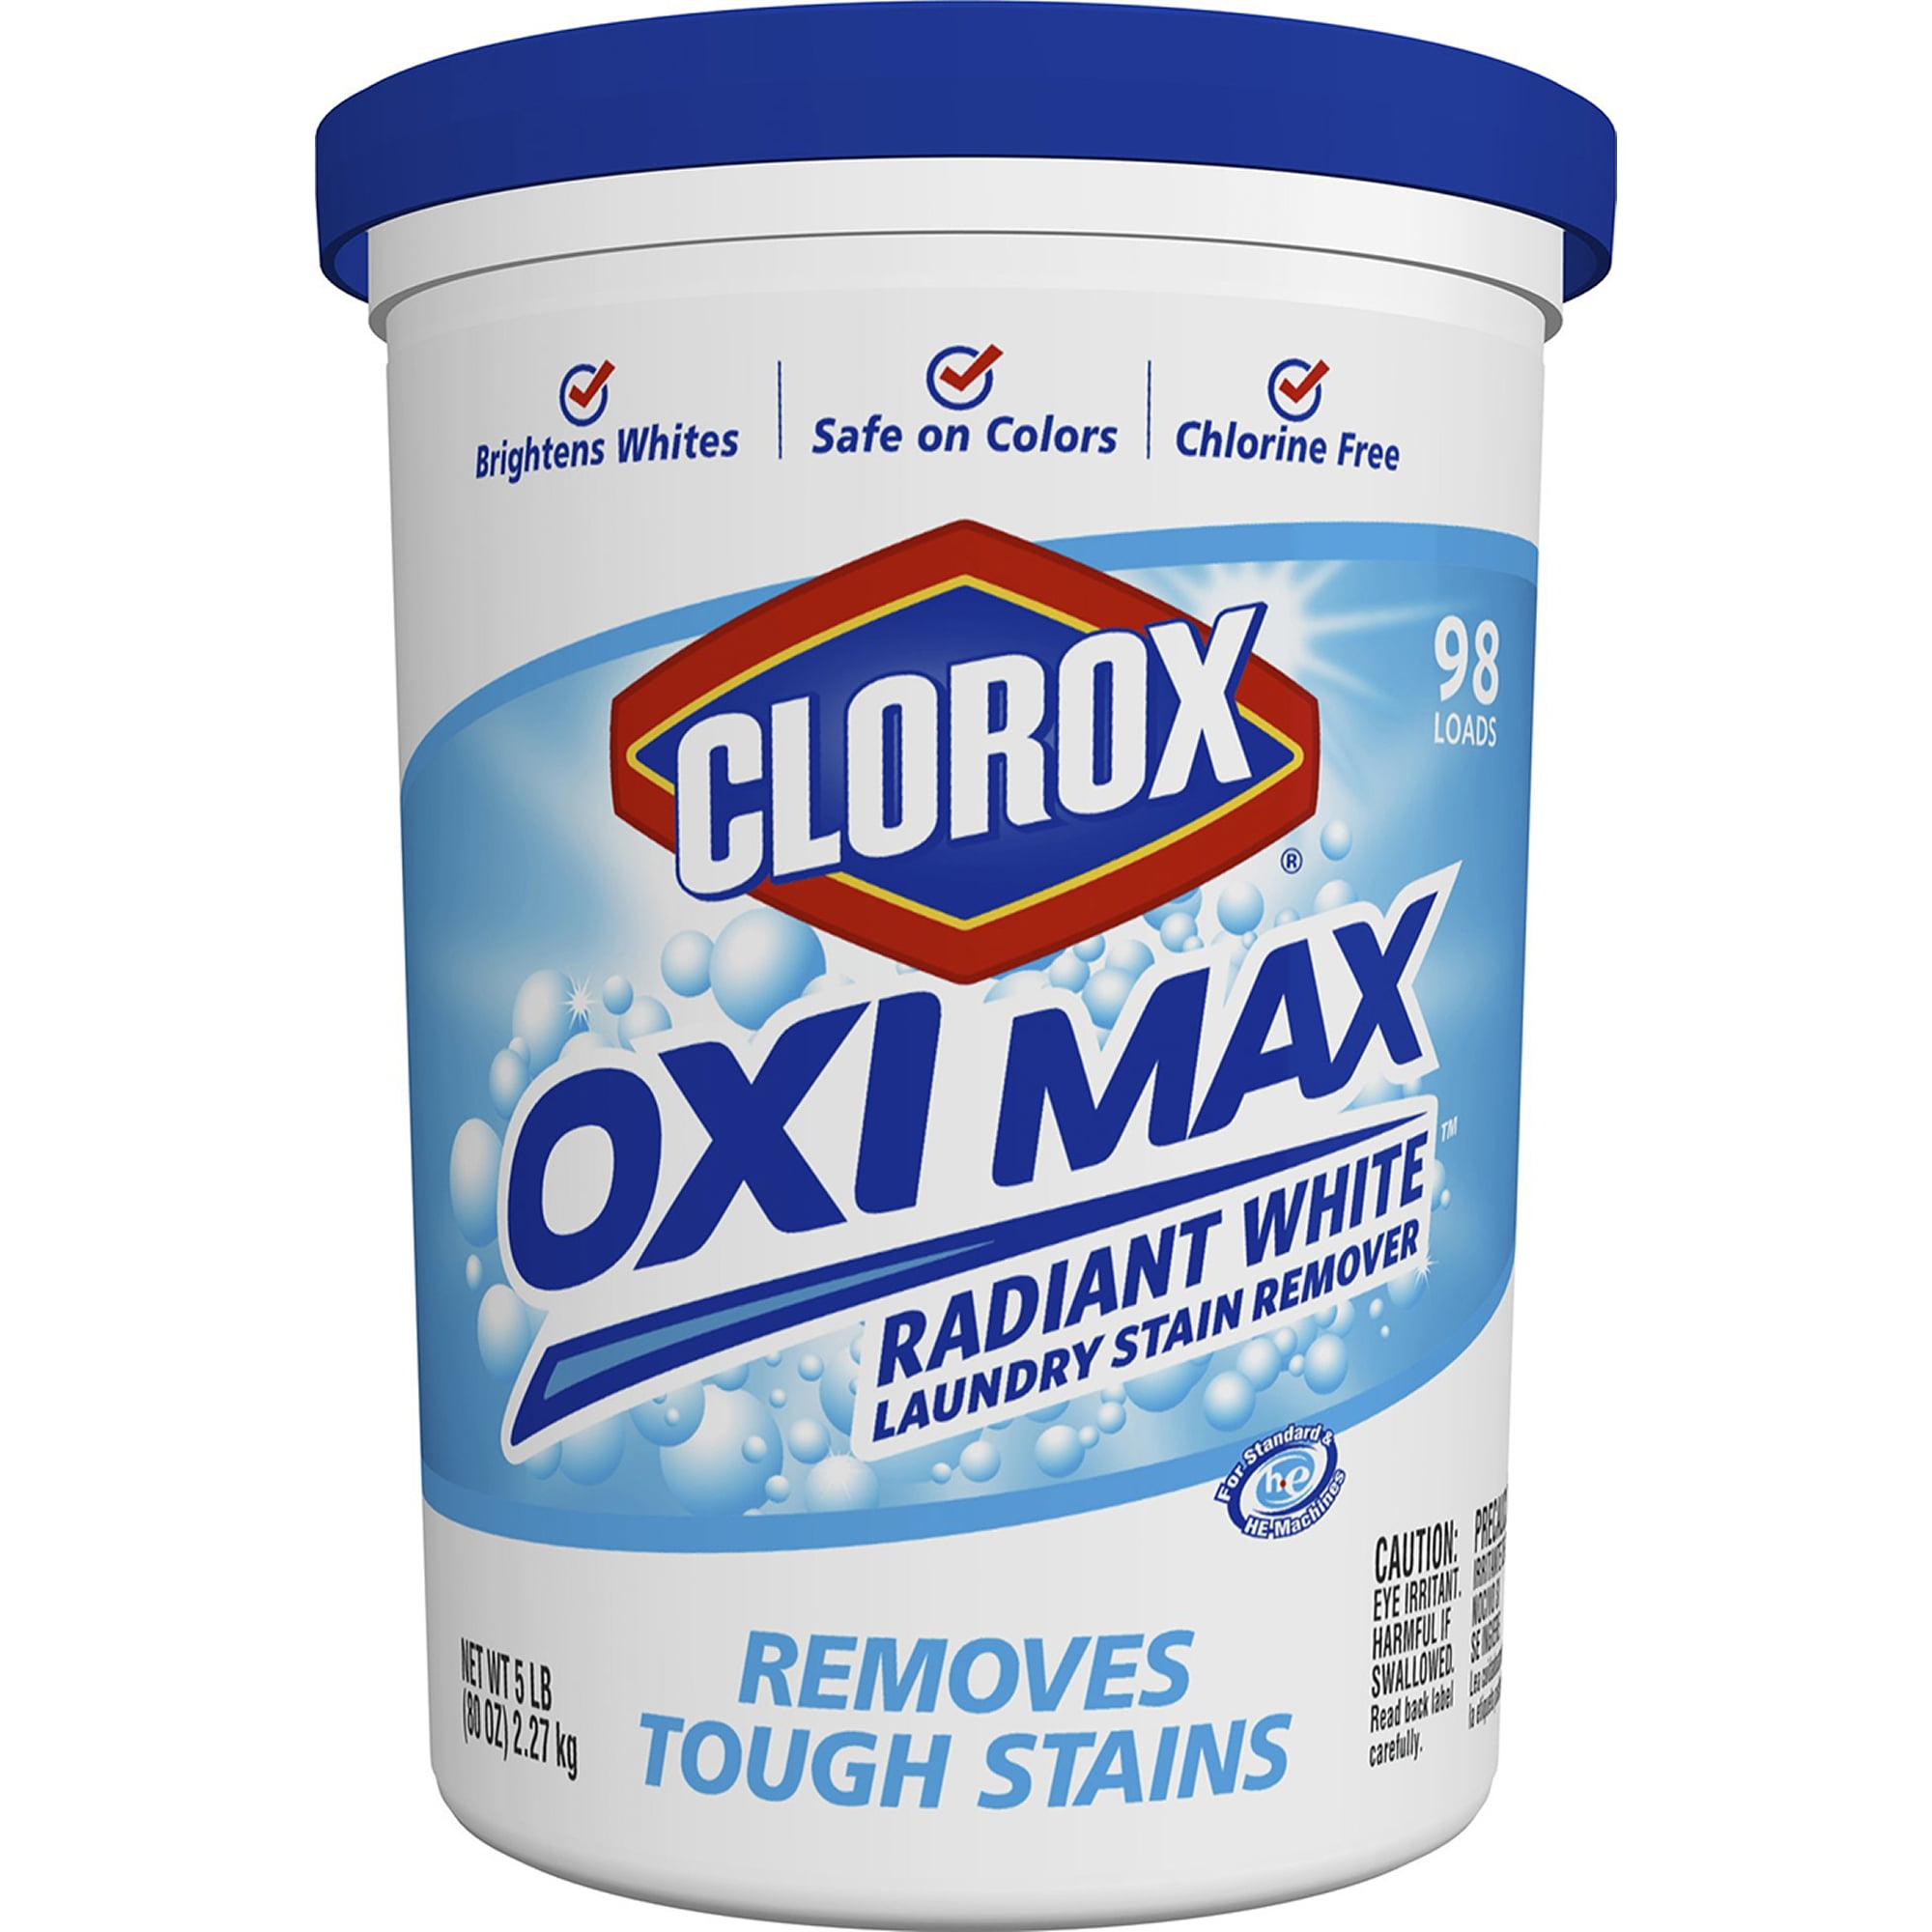 Clorox Oxi Magic Multi-Purpose Stain Remover for sale online